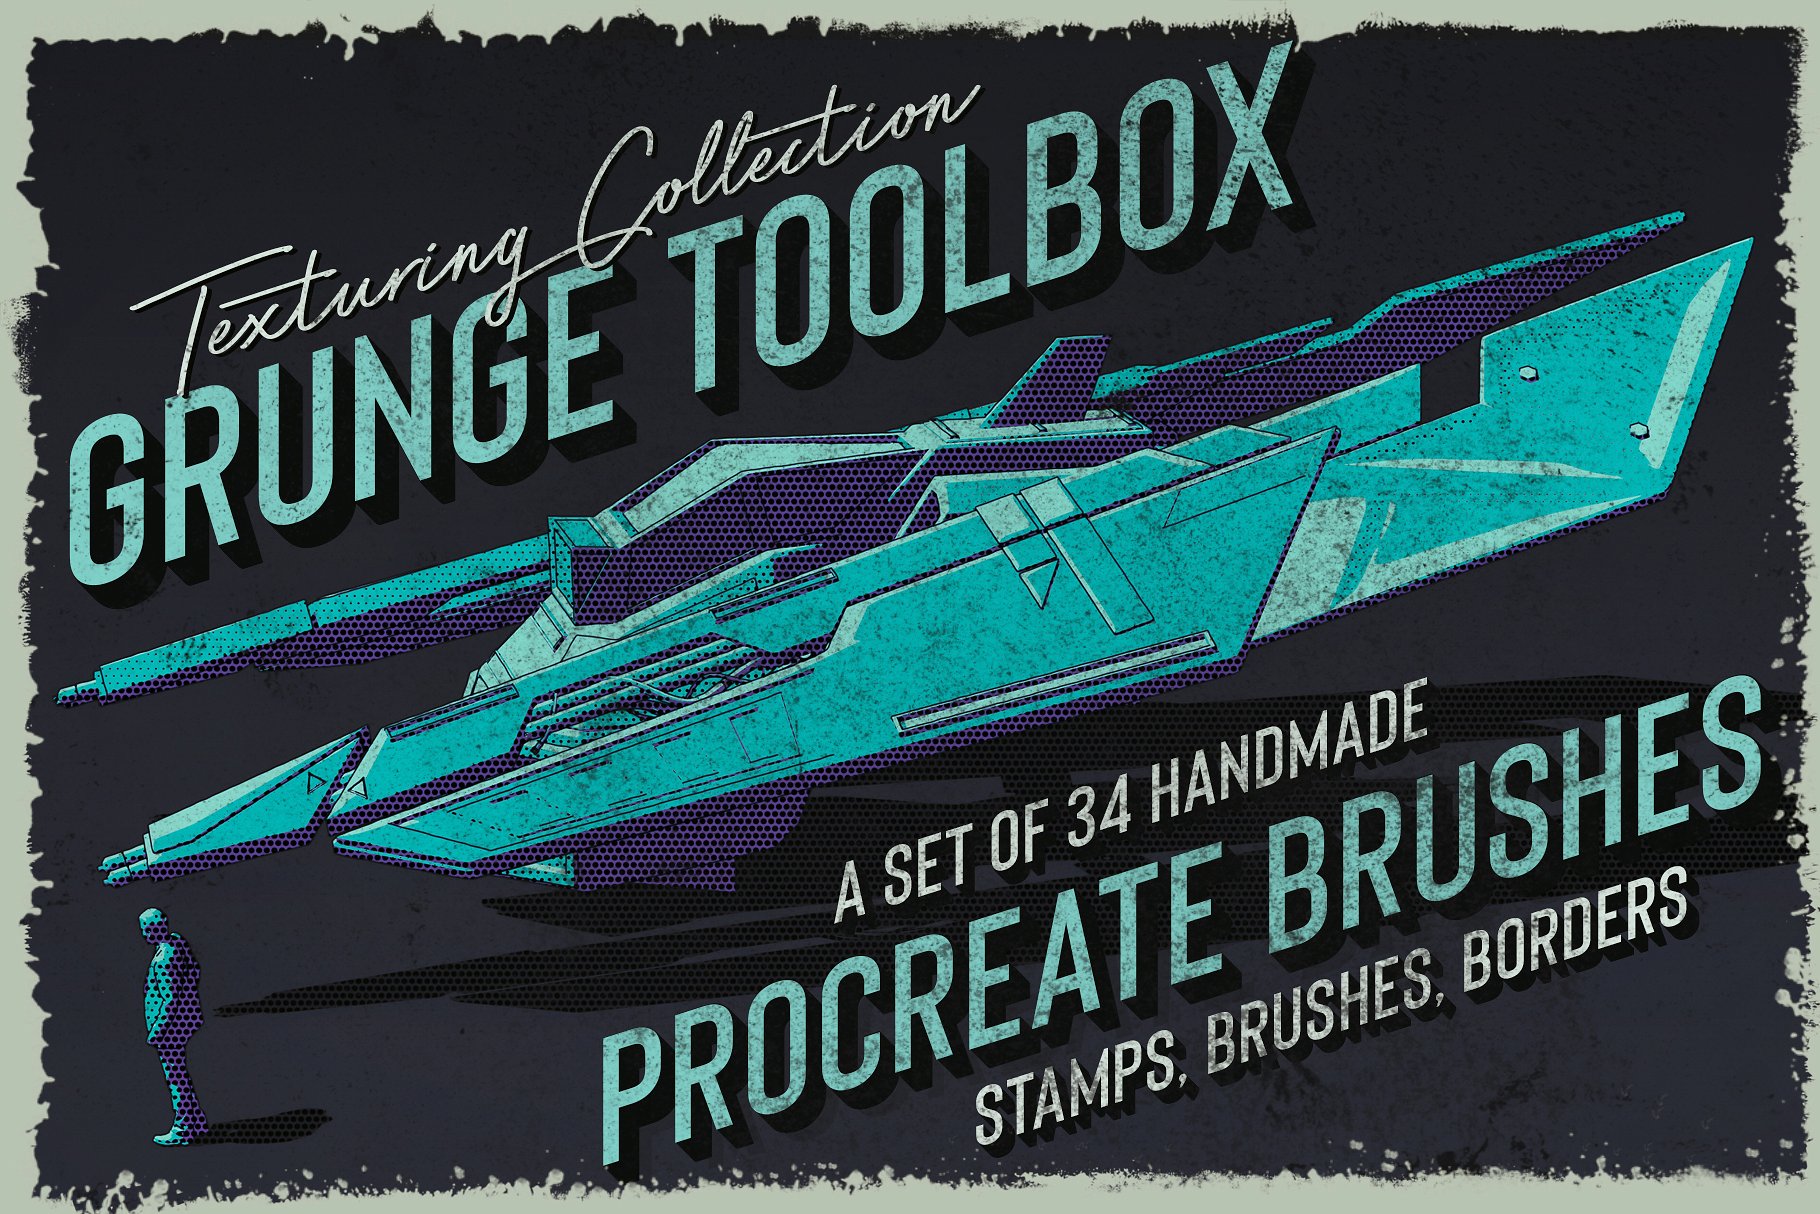 复古半调粗糙素描绘画画笔Procreate笔刷 Grunge Toolbox Procreate Brushes插图